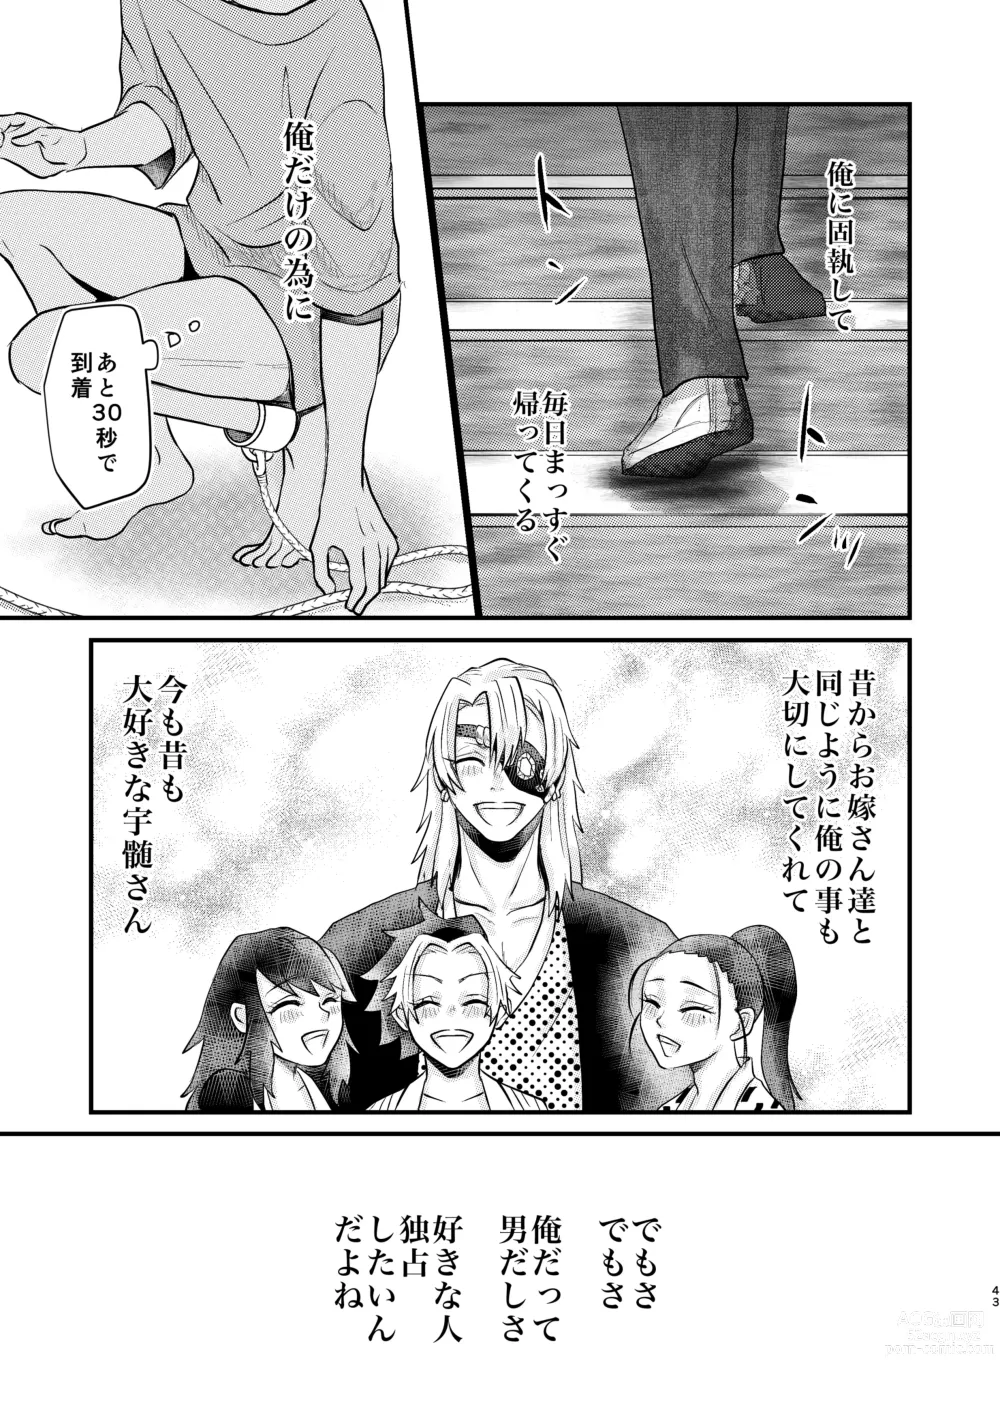 Page 42 of doujinshi Ore Dake no